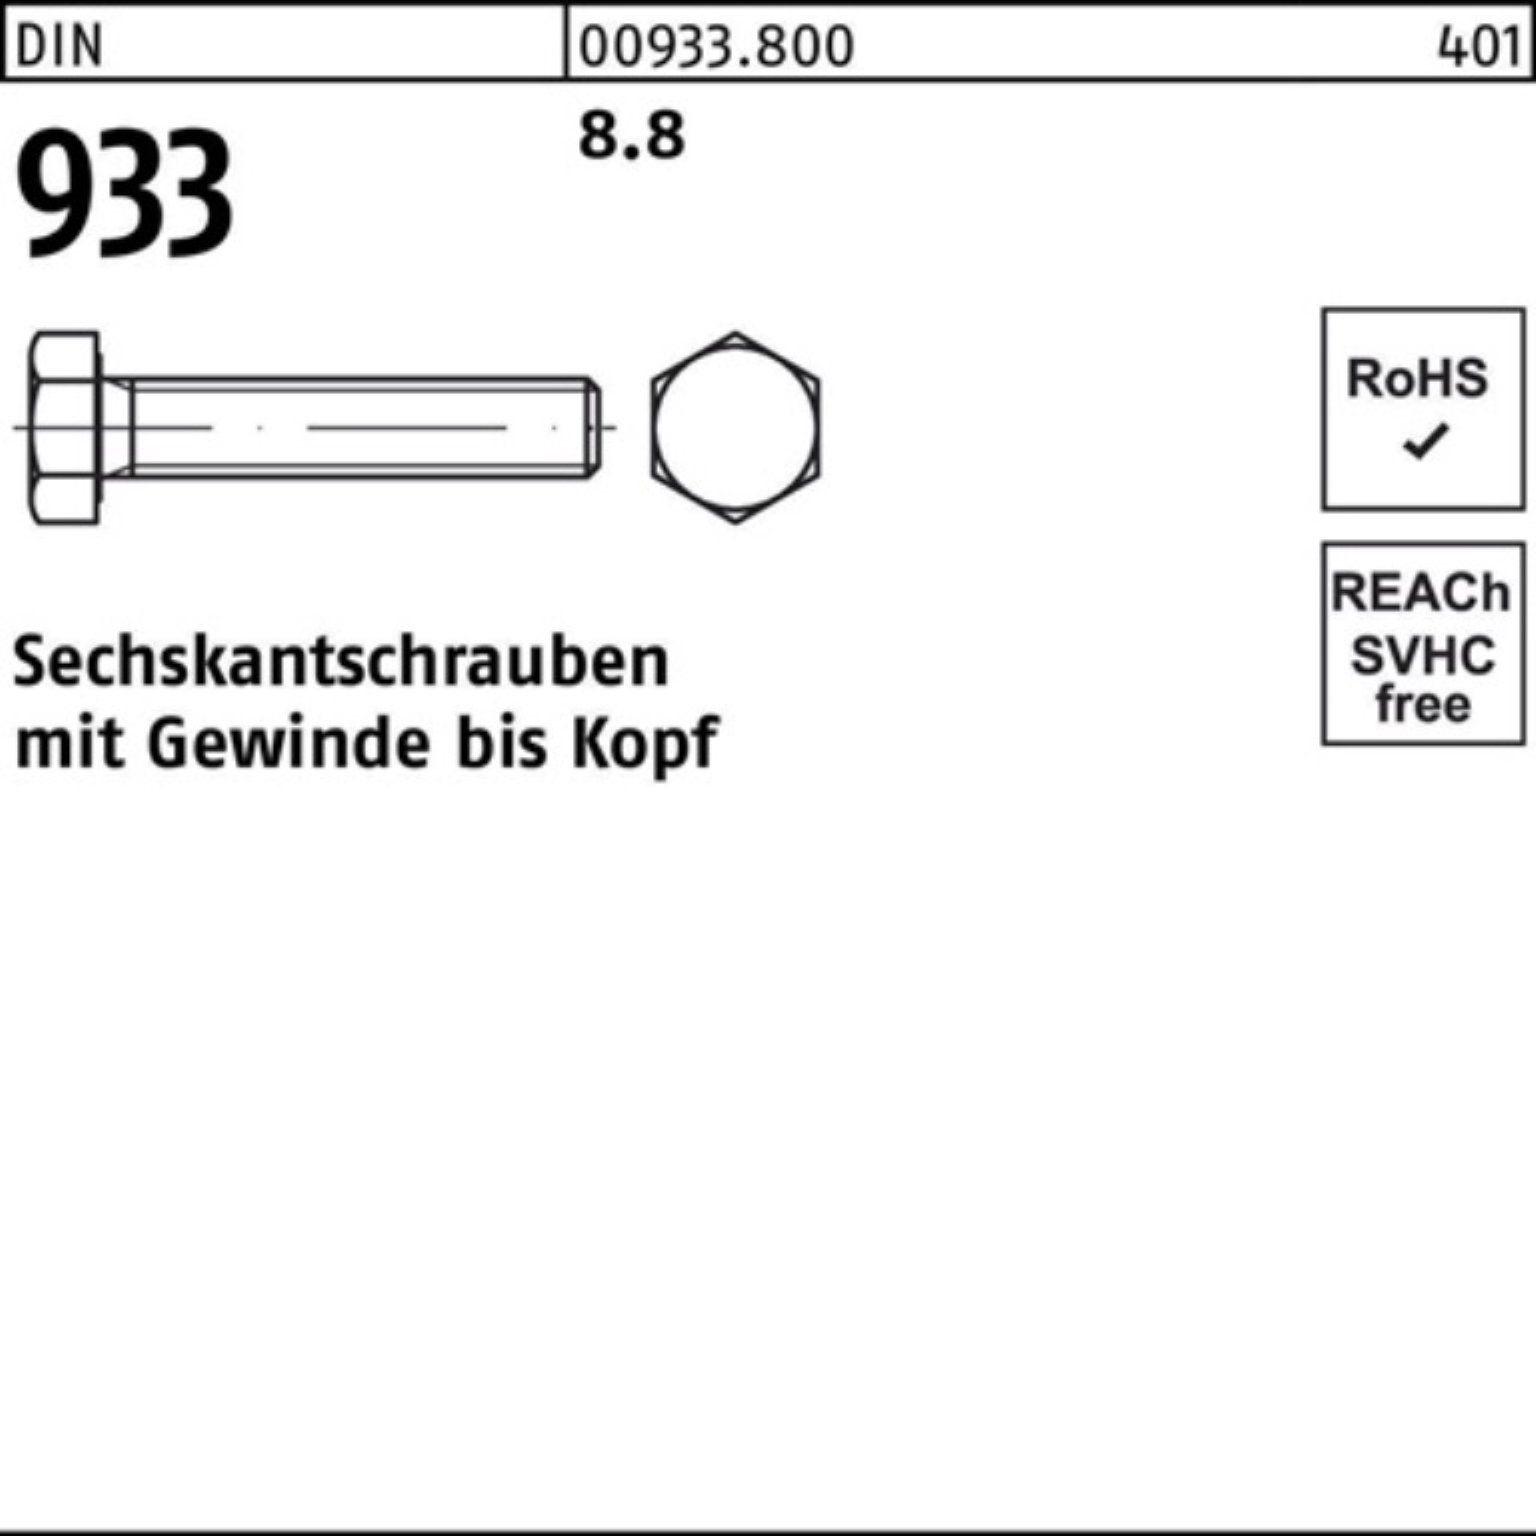 Sechskantschraube Reyher 100er 933 M16x VG Stück Pack DIN 933 300 DIN 8.8 1 Sechskantschraube